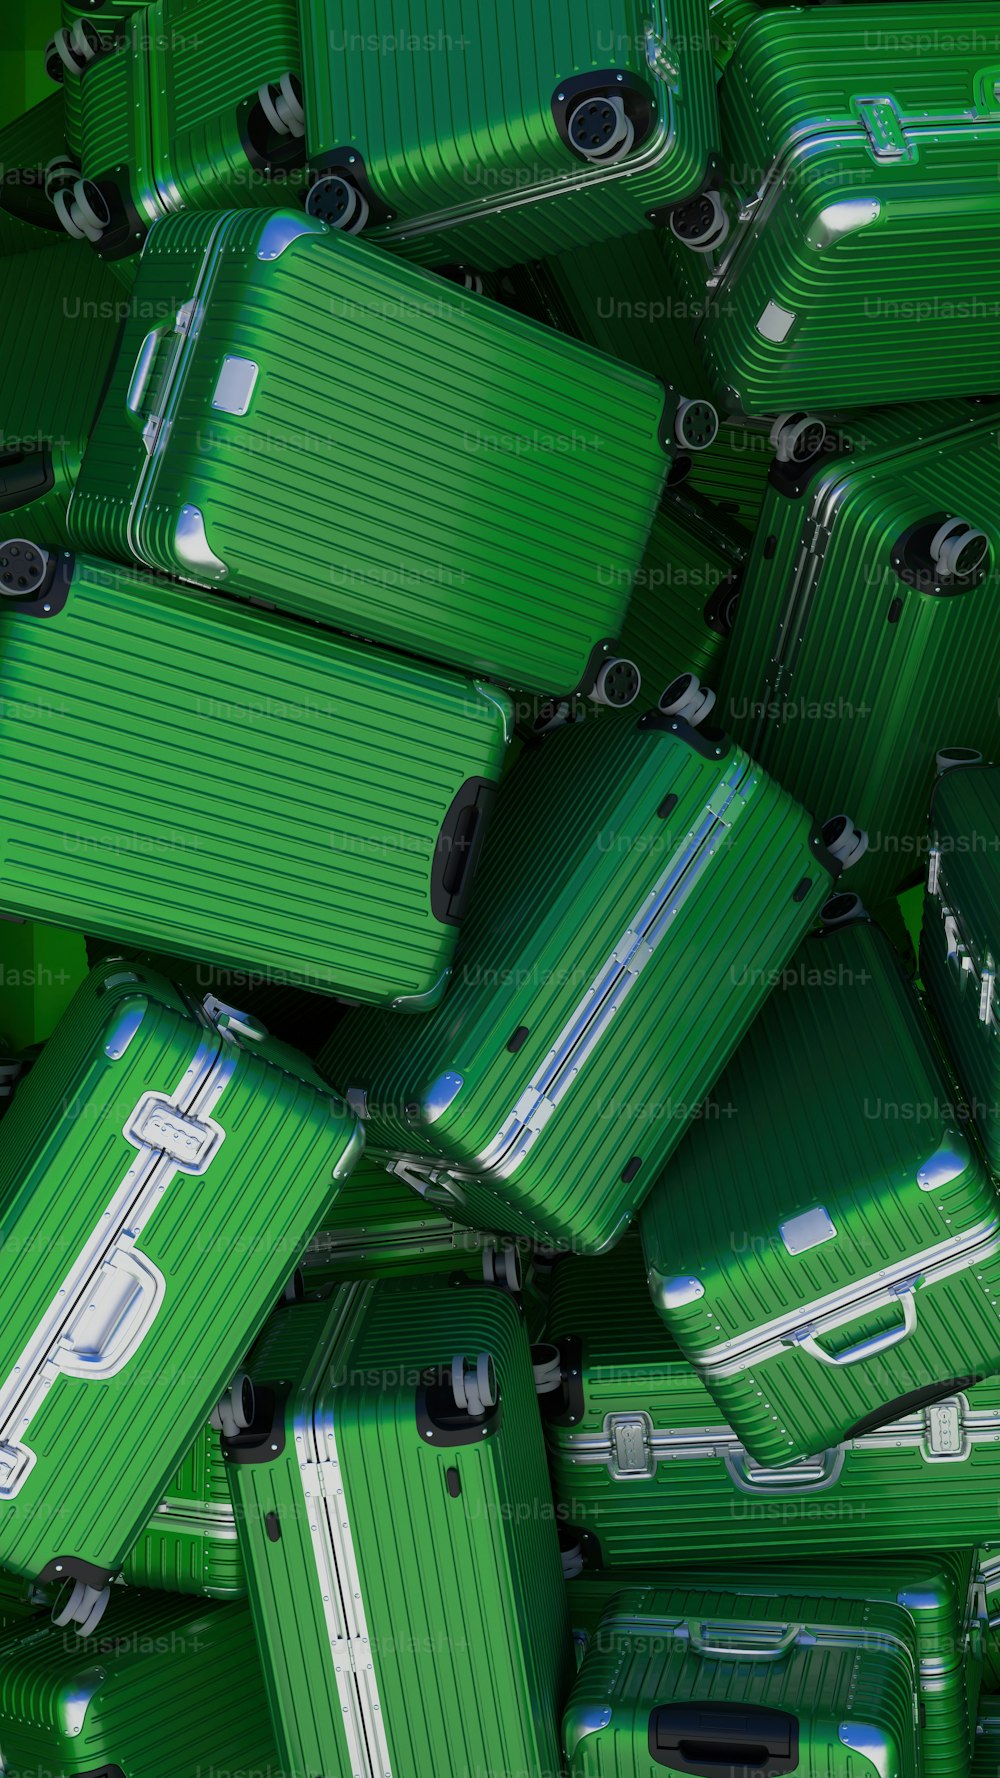 Un montón de maletas verdes apiladas una encima de la otra